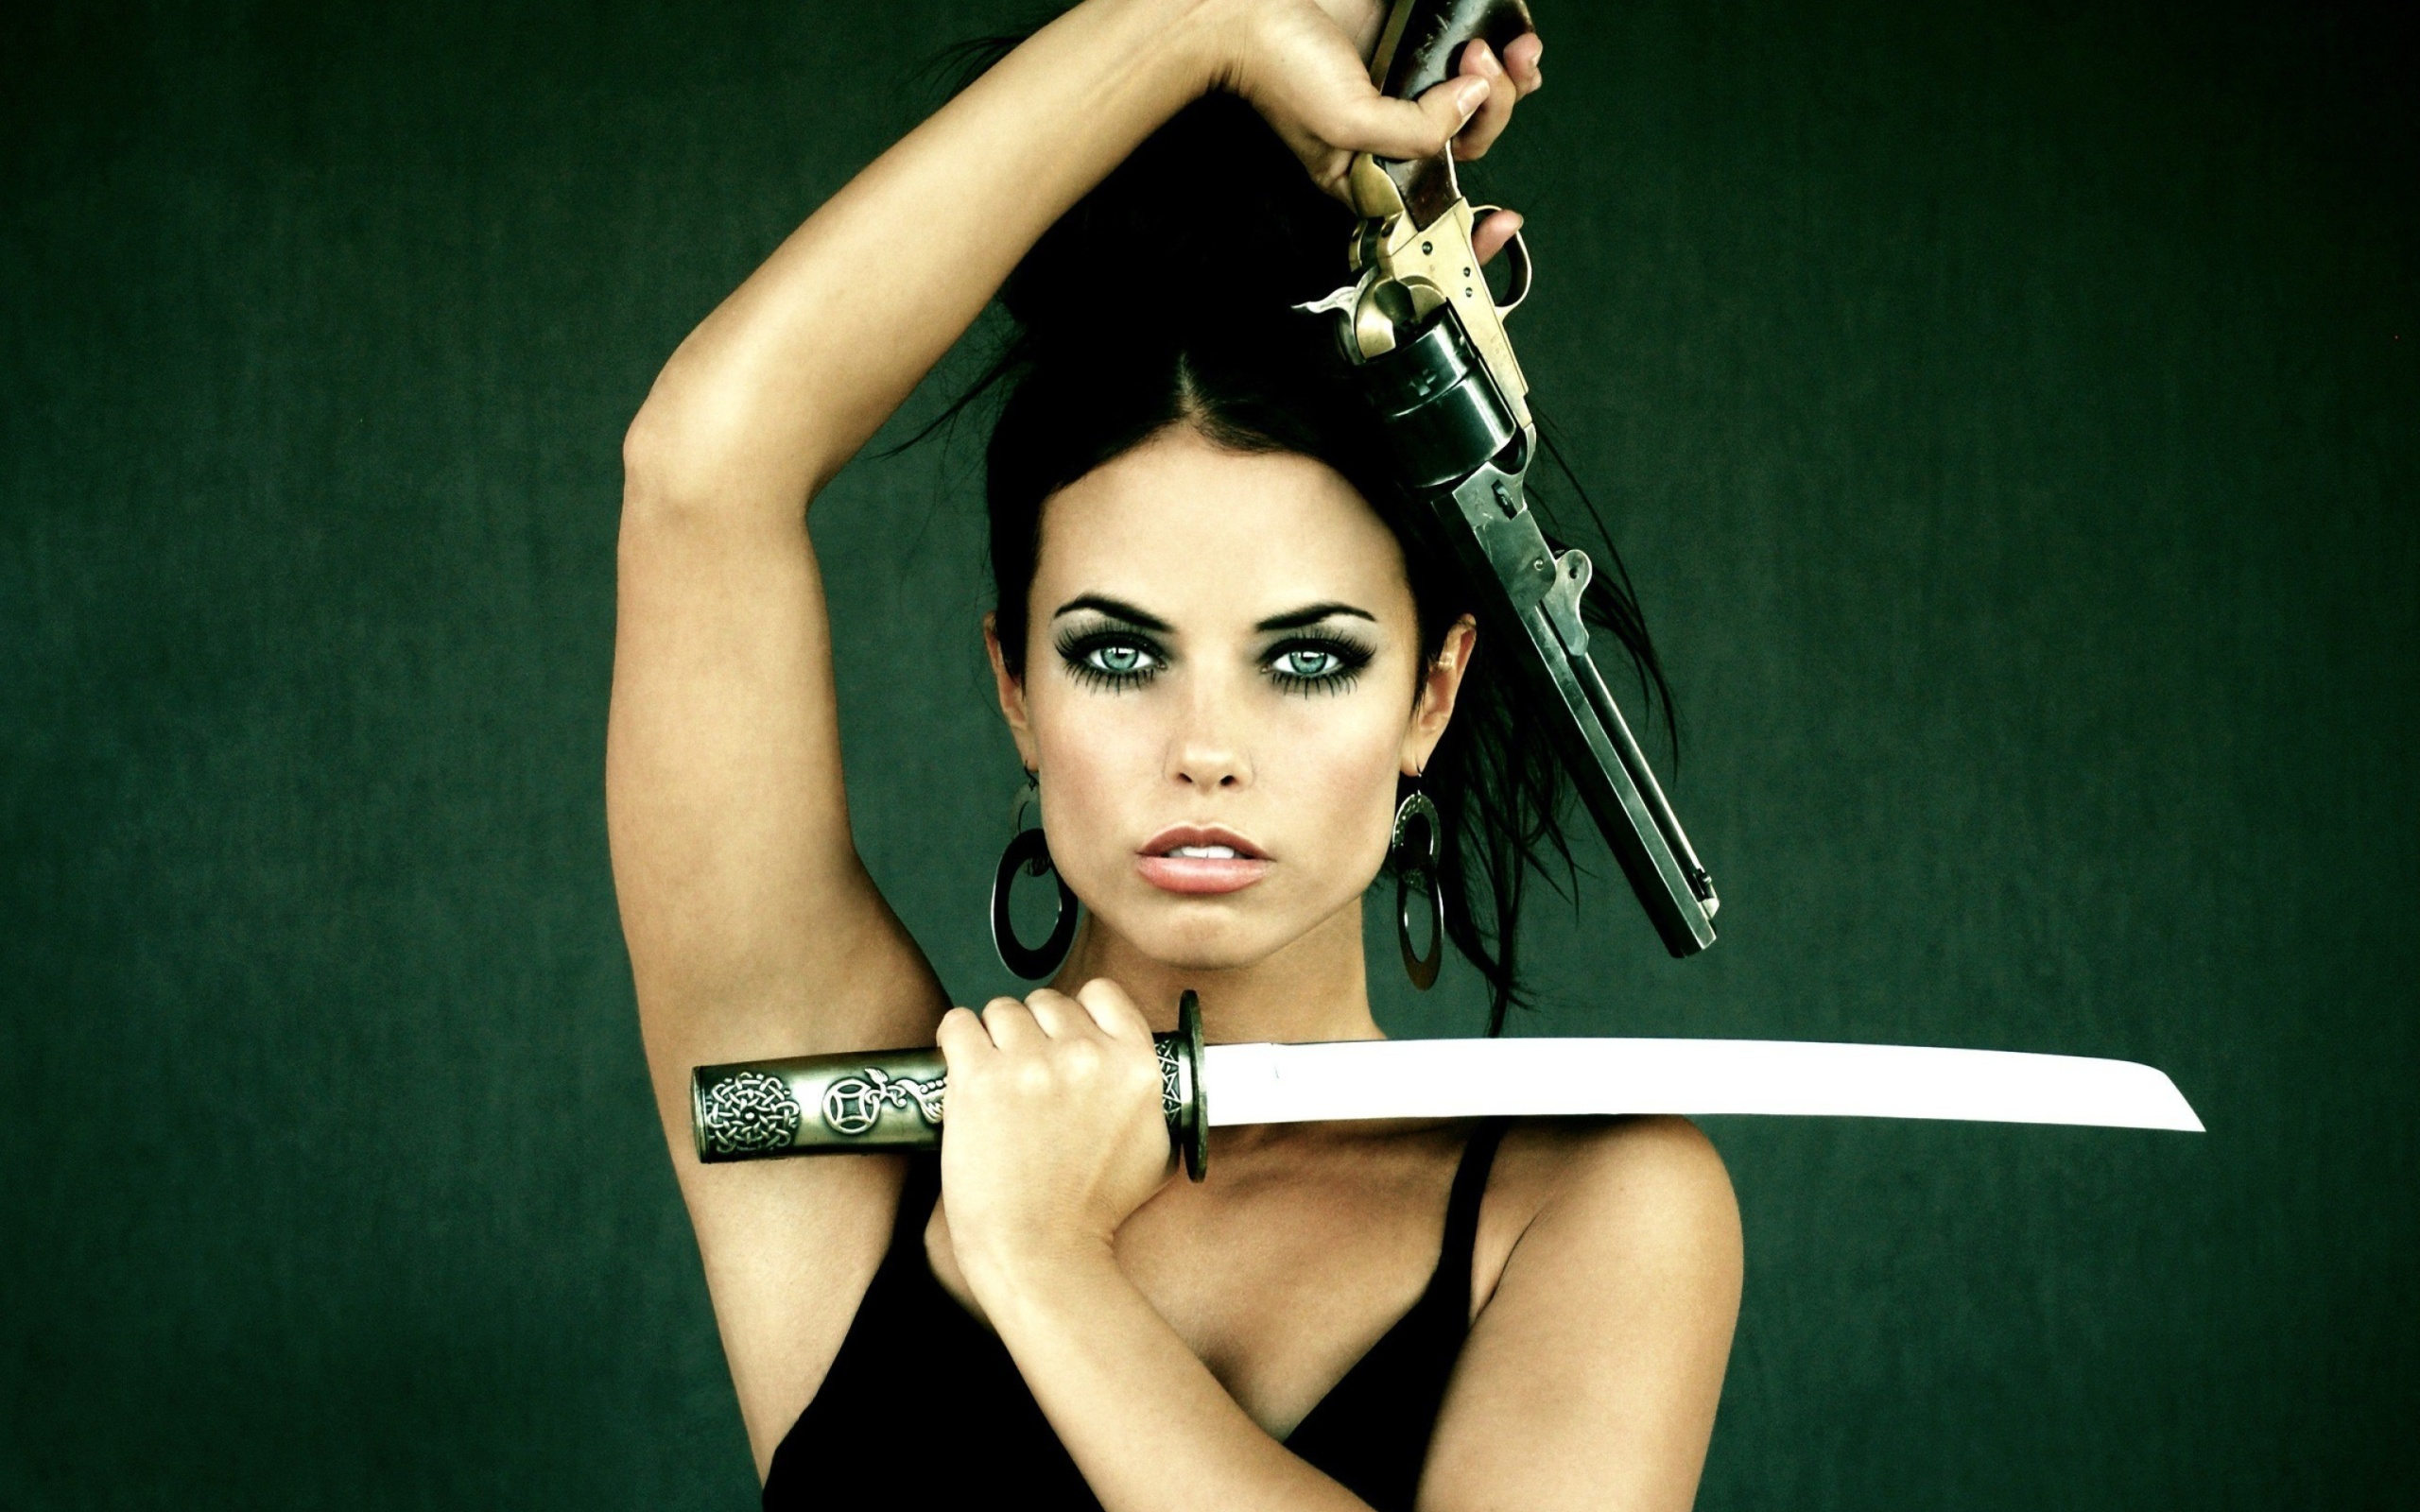 Sfondi Warrior girl with swords 2560x1600